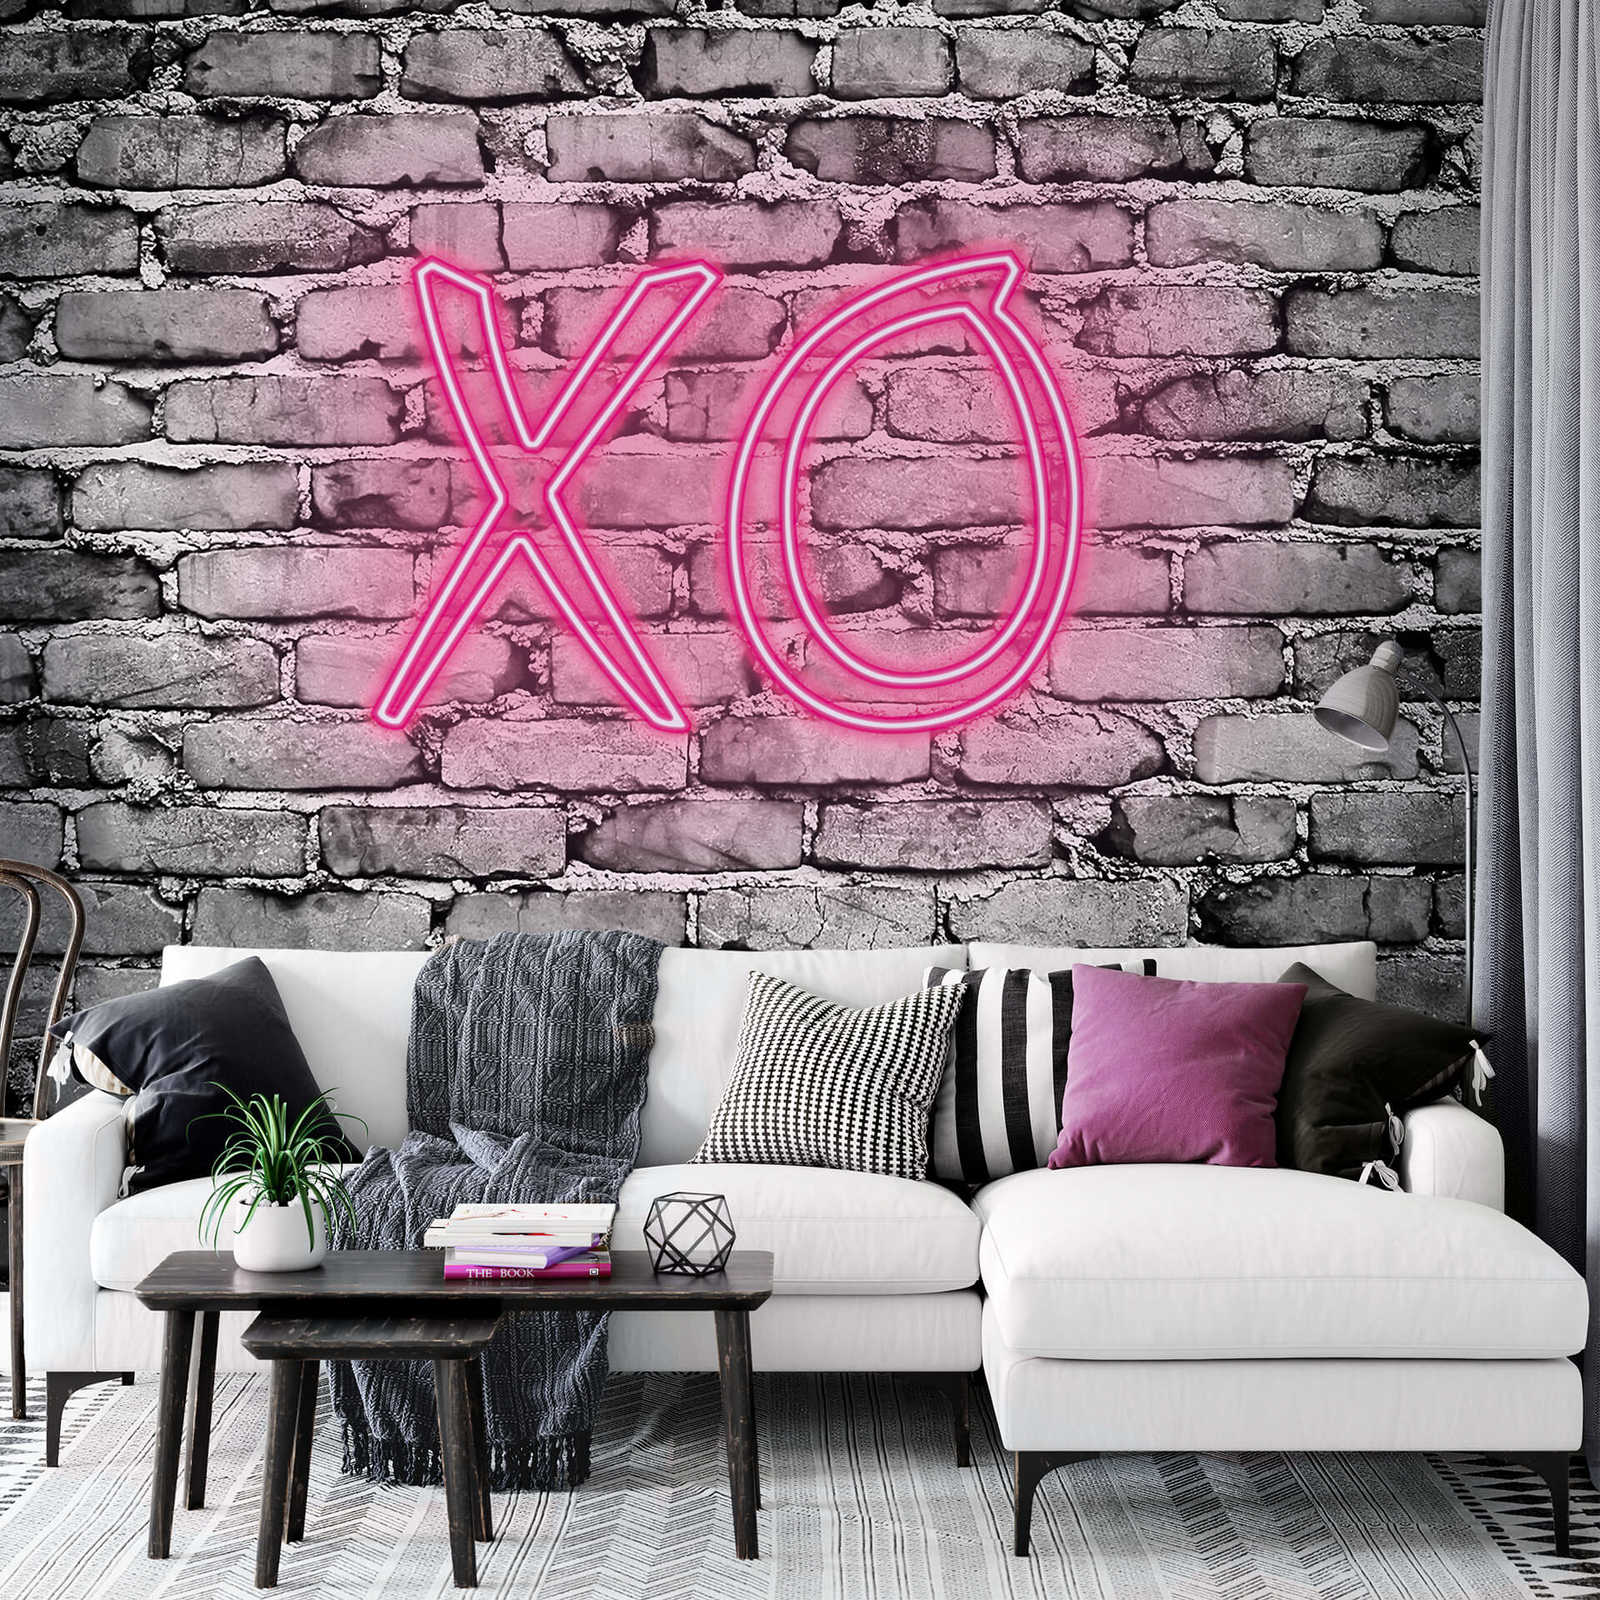             Papel pintado estrecho con letras XO iluminadas en la pared de piedra
        